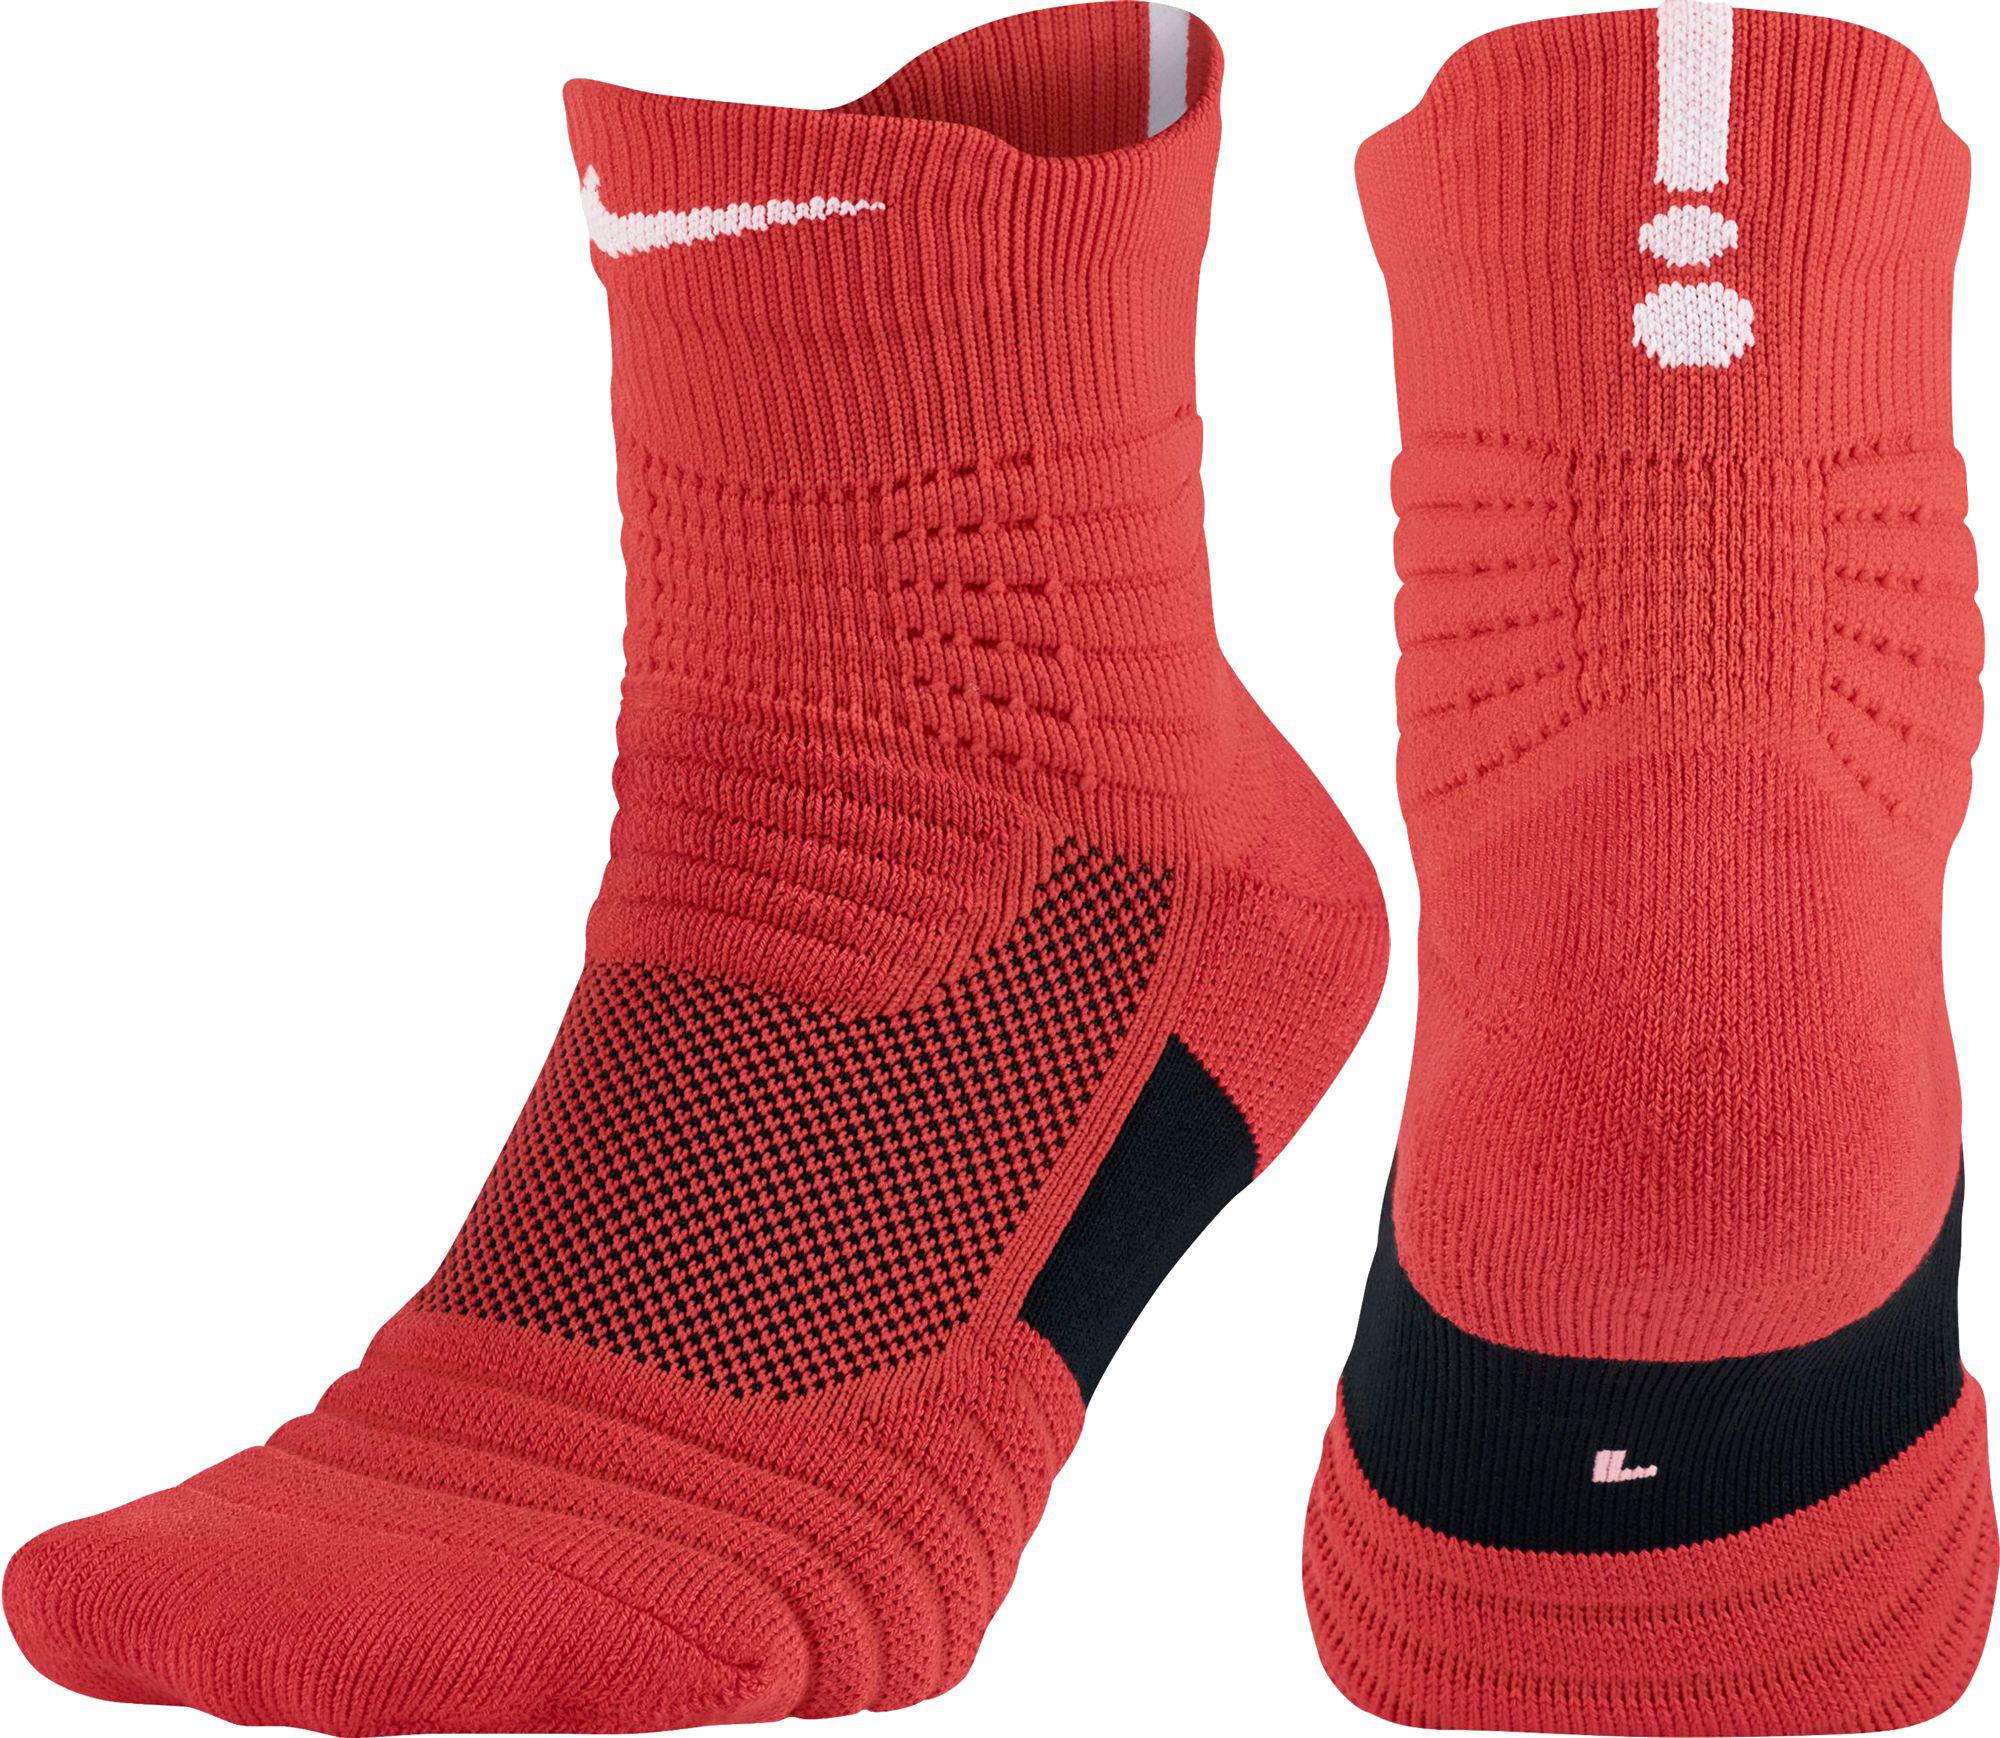 Quarter Basketball Socks in lt Crimson 